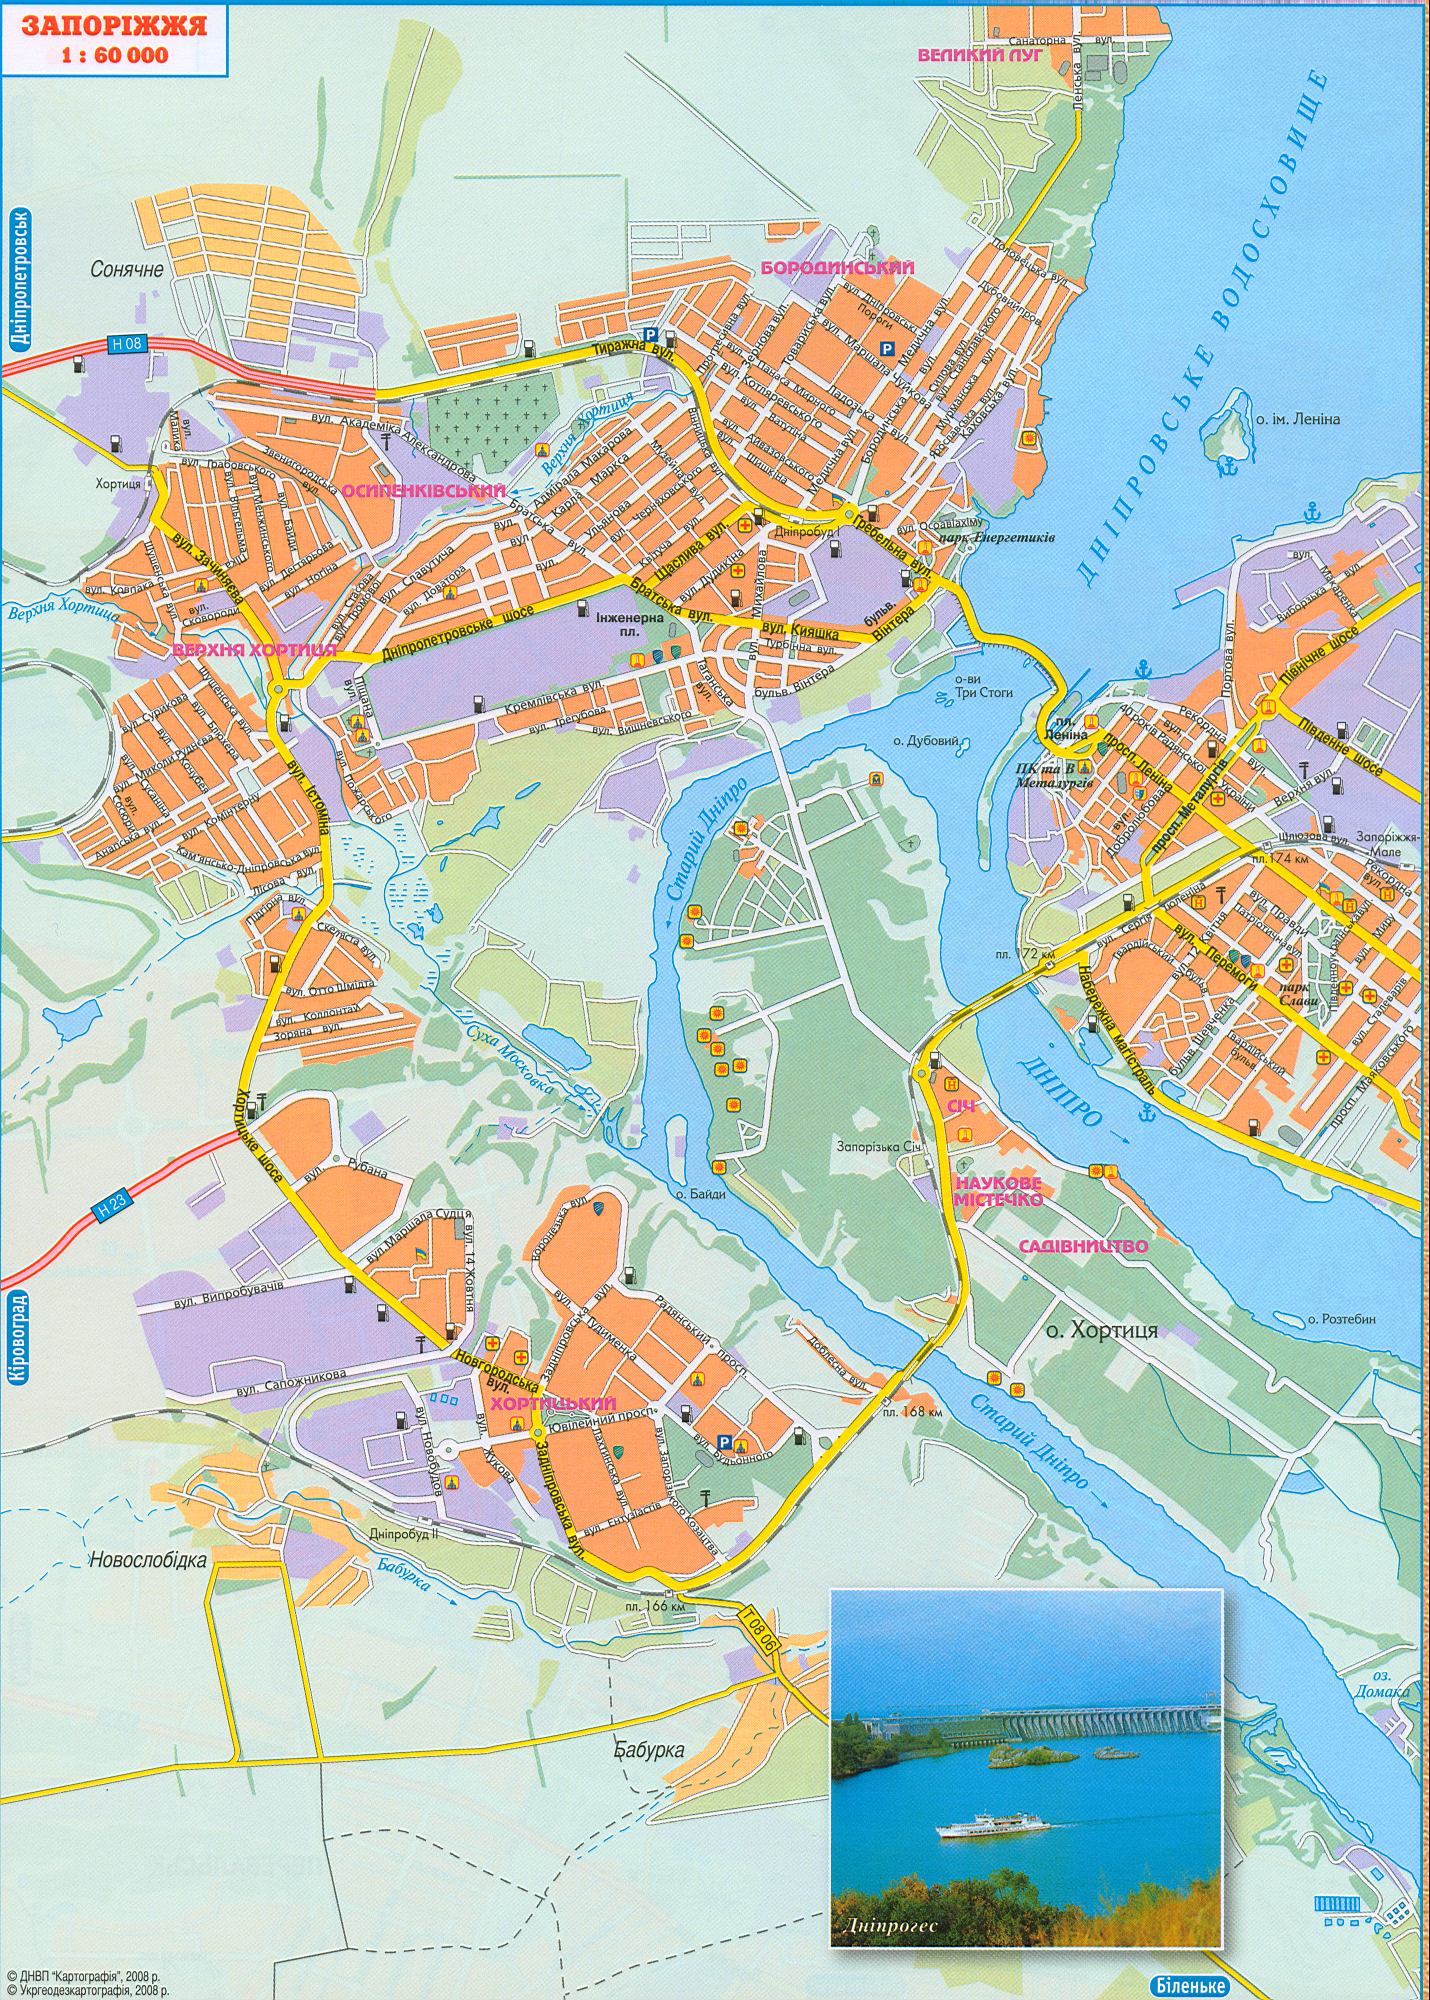 Karte von Saporischschja neu 2008. Straßen, Transits durch die Stadt Zaporozhye. Kostenlos herunterladen